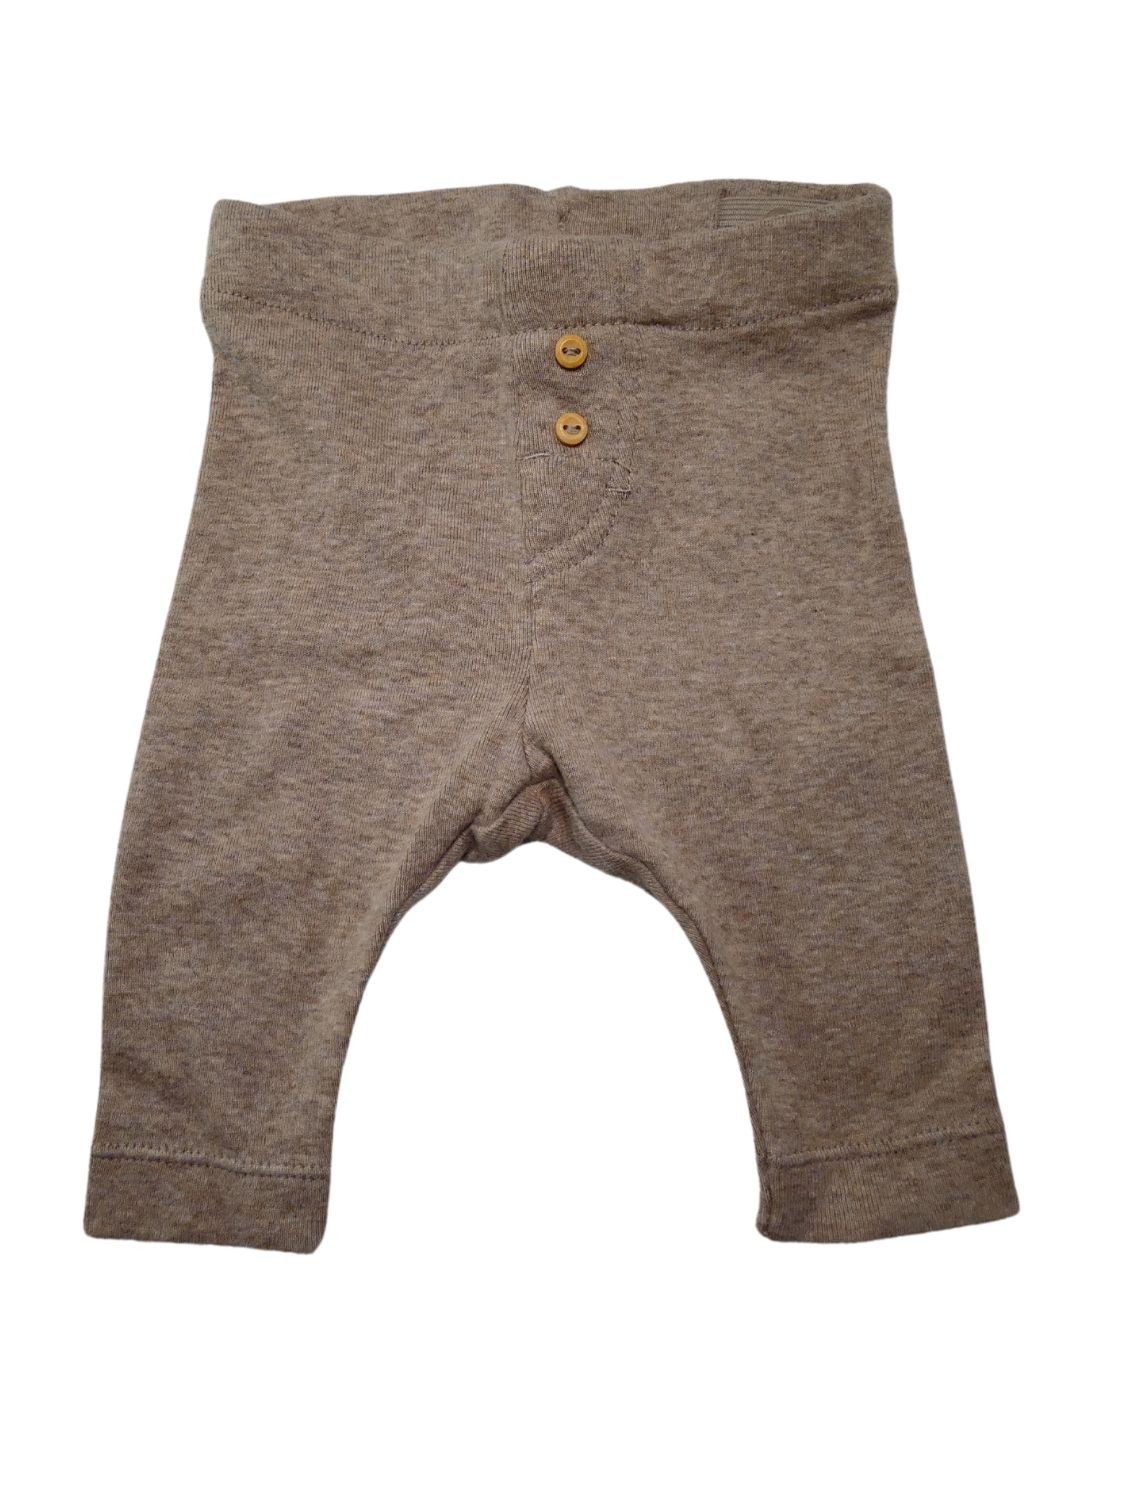 Pantalon taille réglable marron H&M taille 3 mois